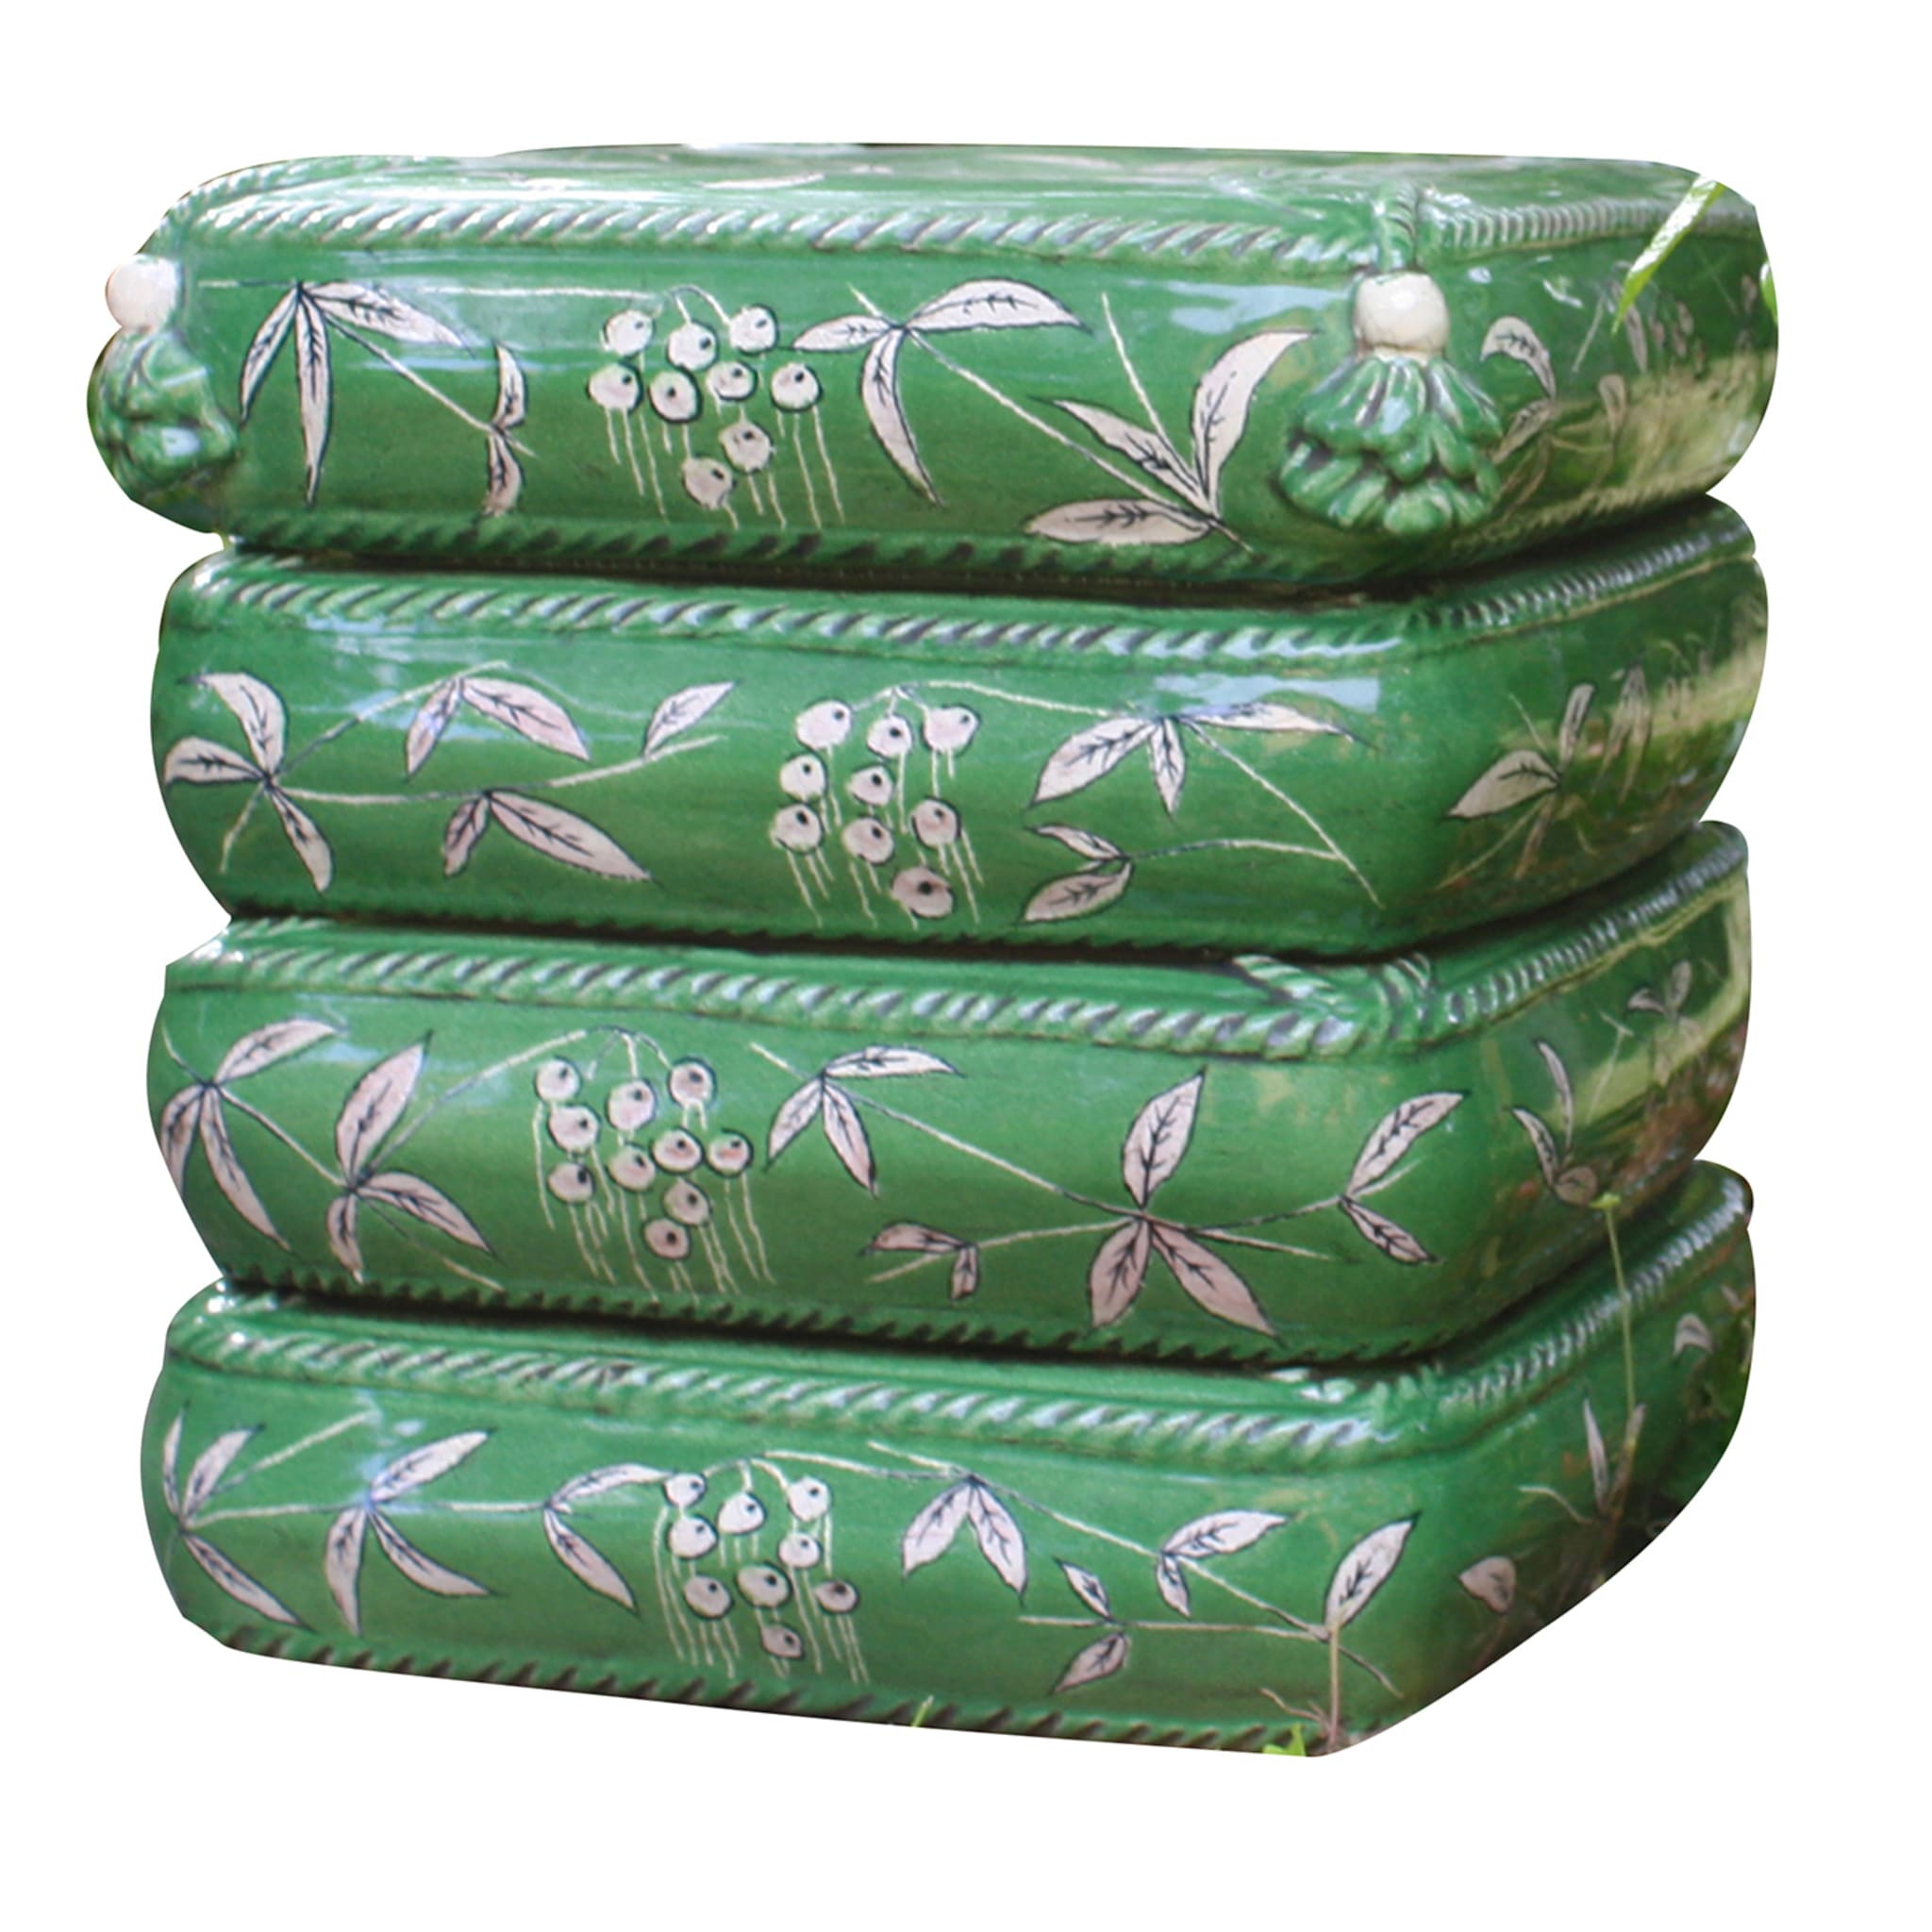 4-Kissen-Pouf aus grüner Keramik - Hauptansicht